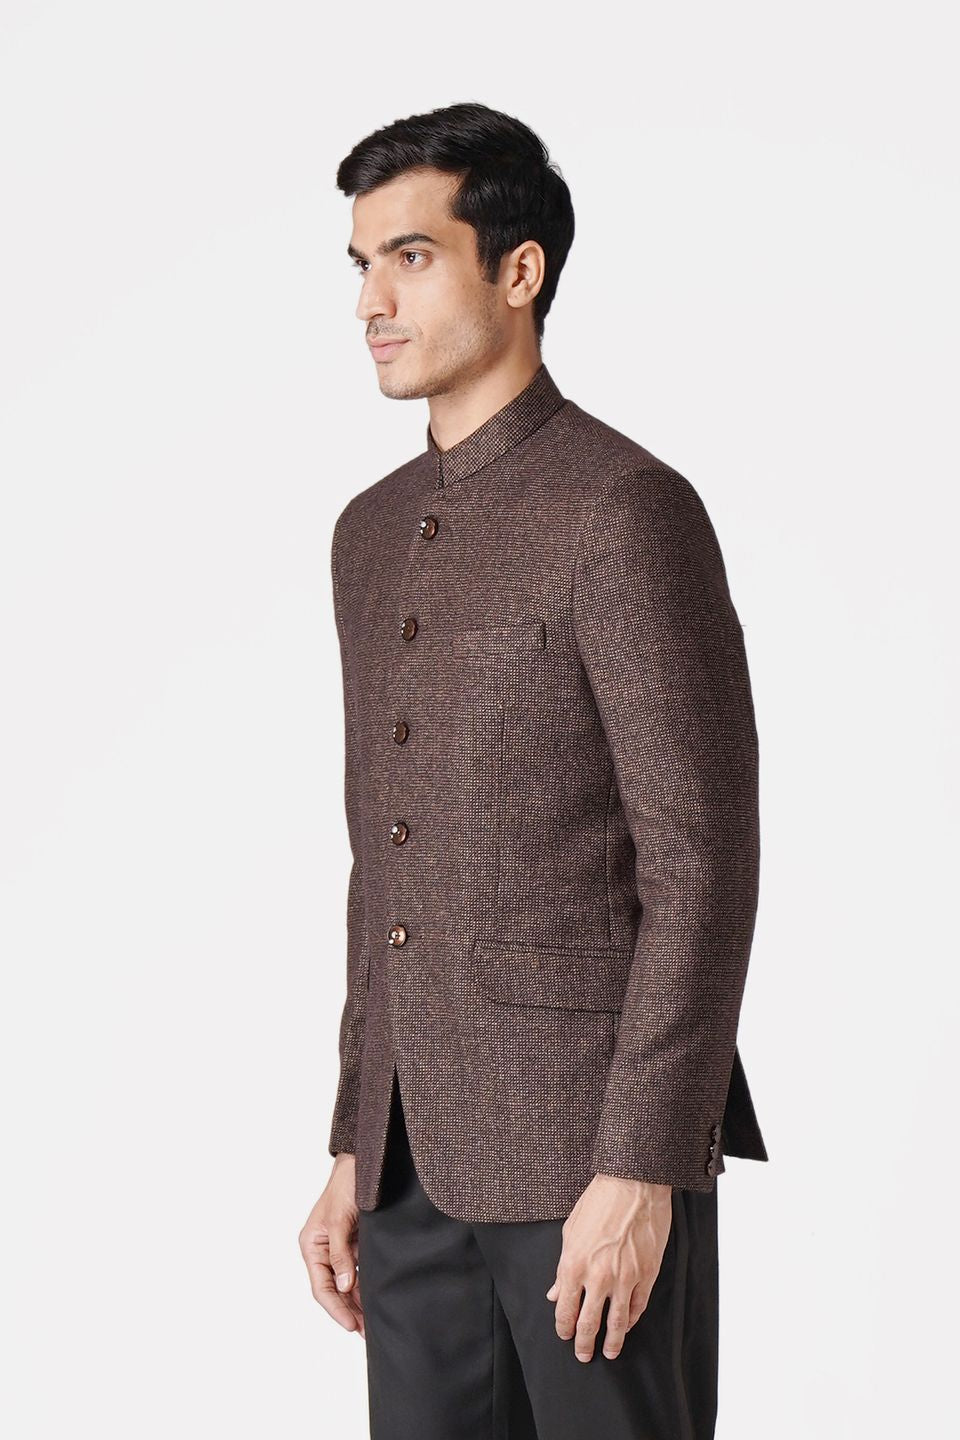 WINTAGE Men's Tweed Casual and Festive Blazer Coat Jacket: Dark Brown Dark Brown / 46 / 2X-Large